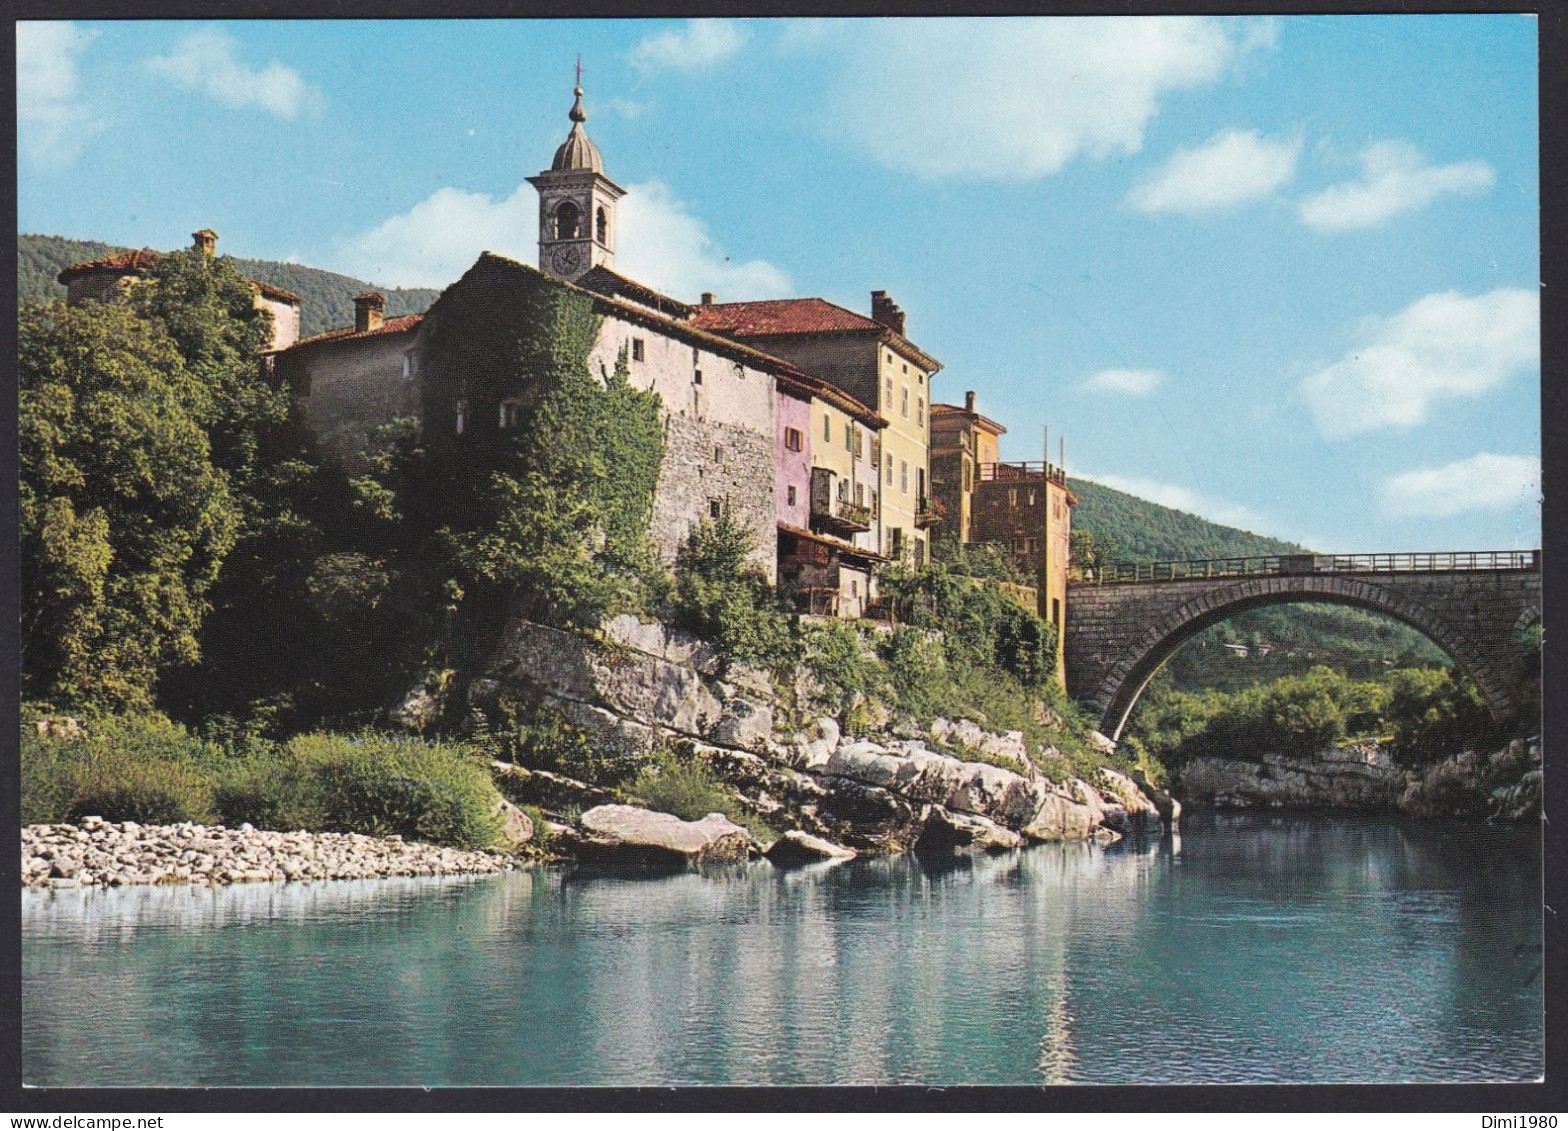 Kanal - Dolina Soče - Slovenia